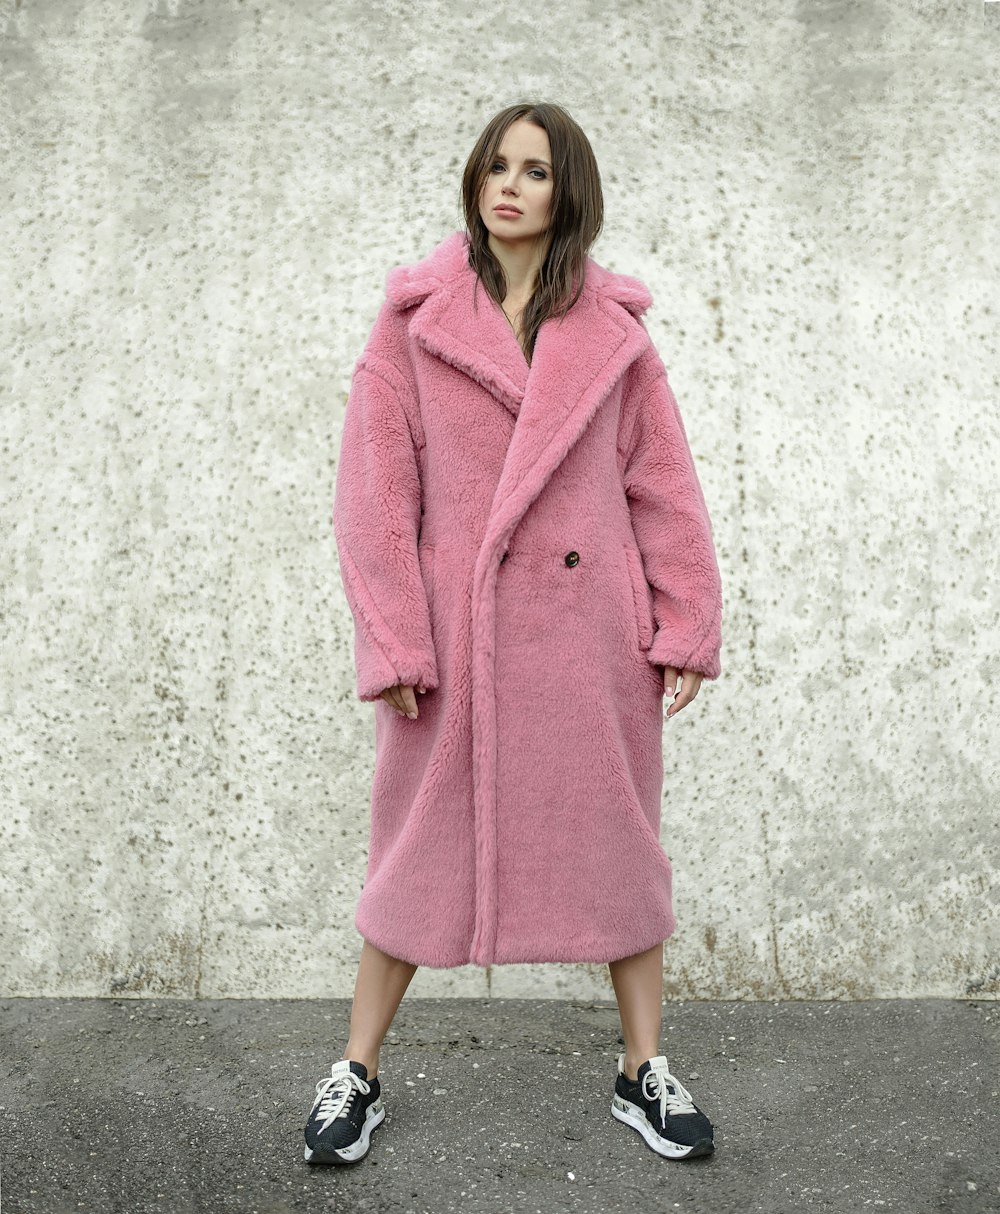 femme debout tout en portant un manteau rose